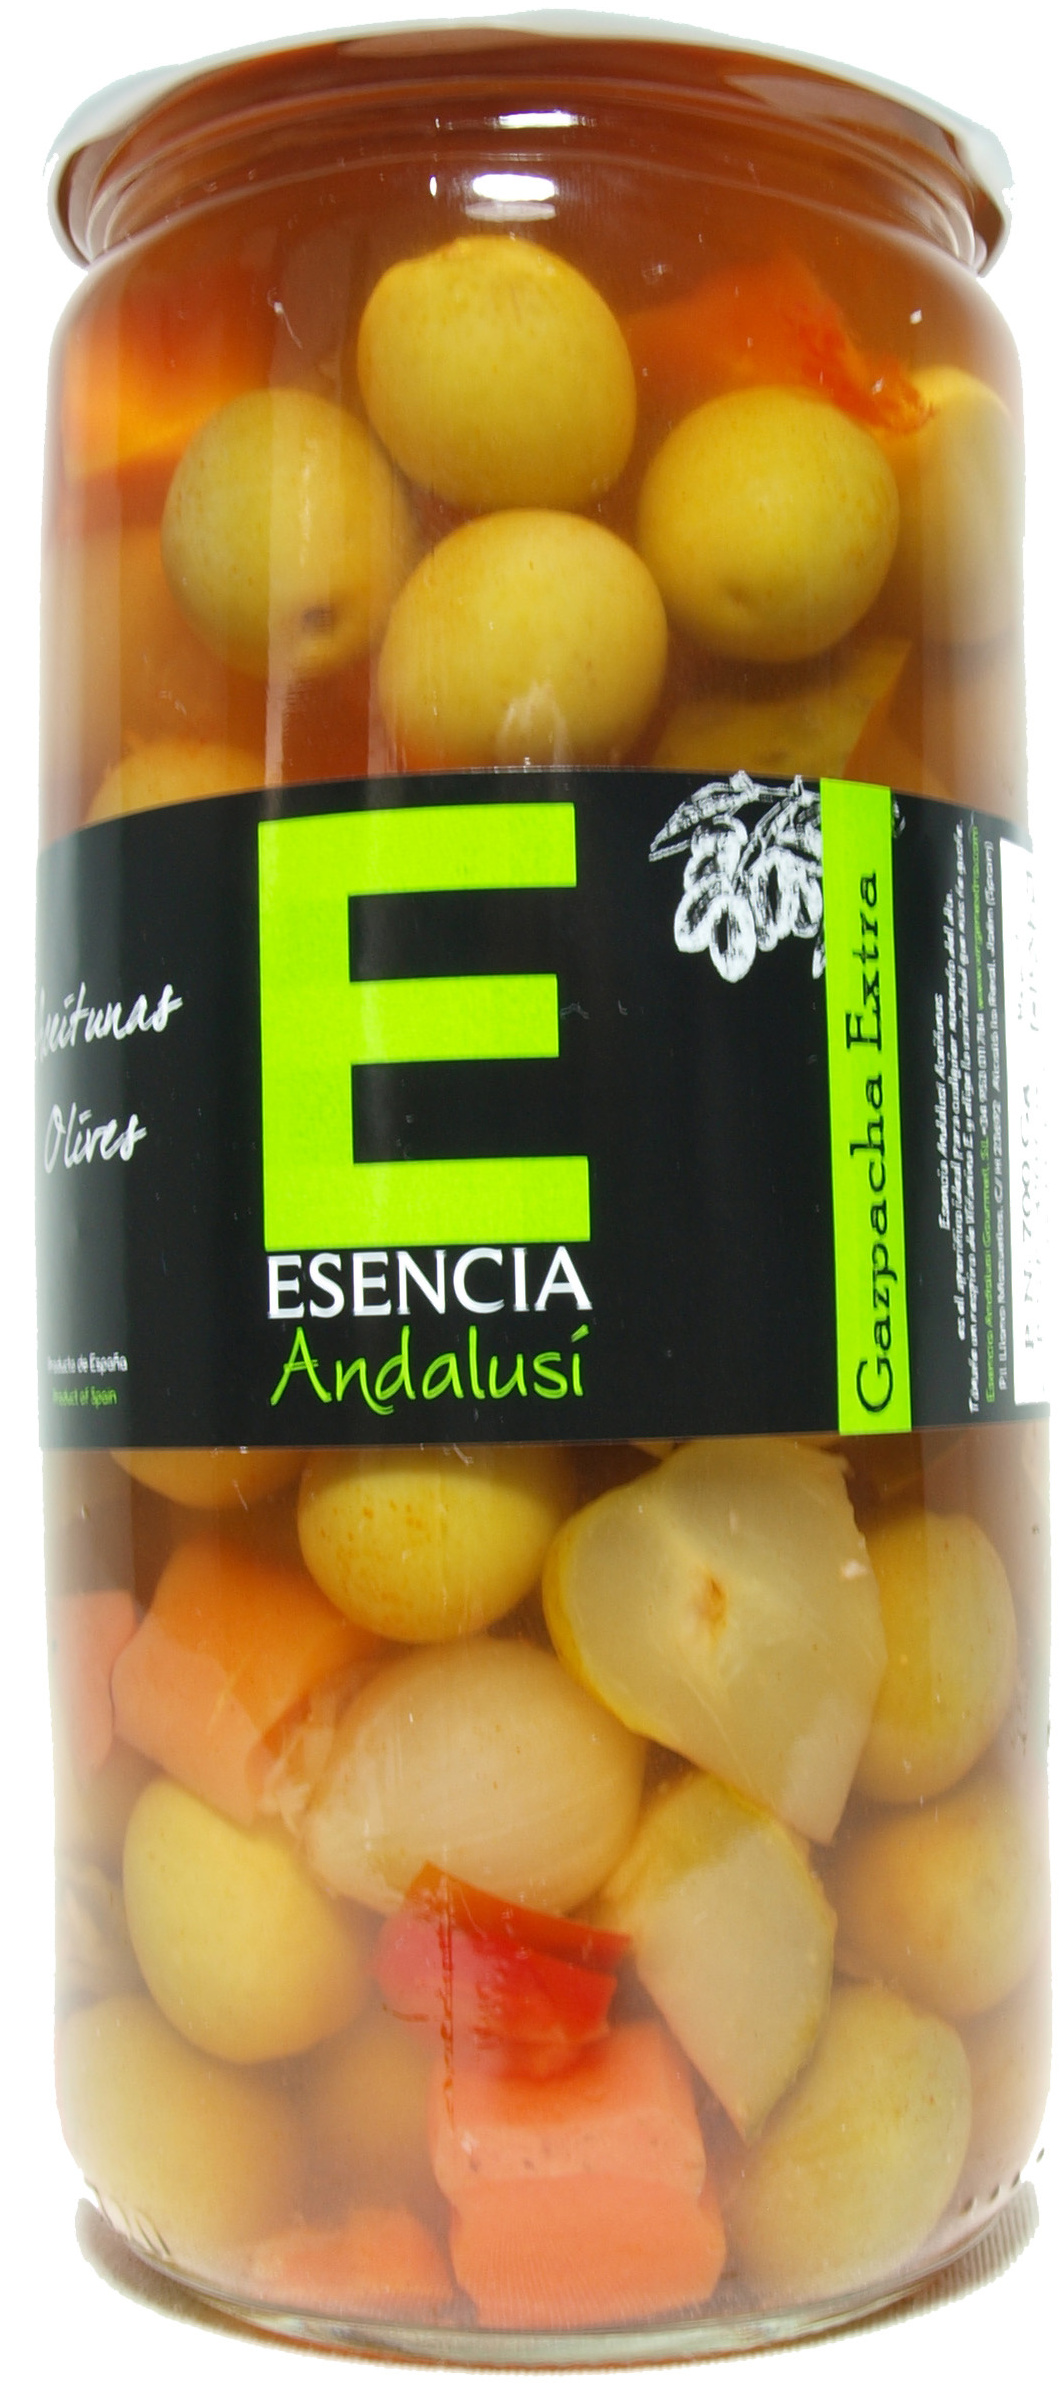 Aceitunas verdes aliñadas a la gazpacha "Esencia Andalusí" - Producte - es